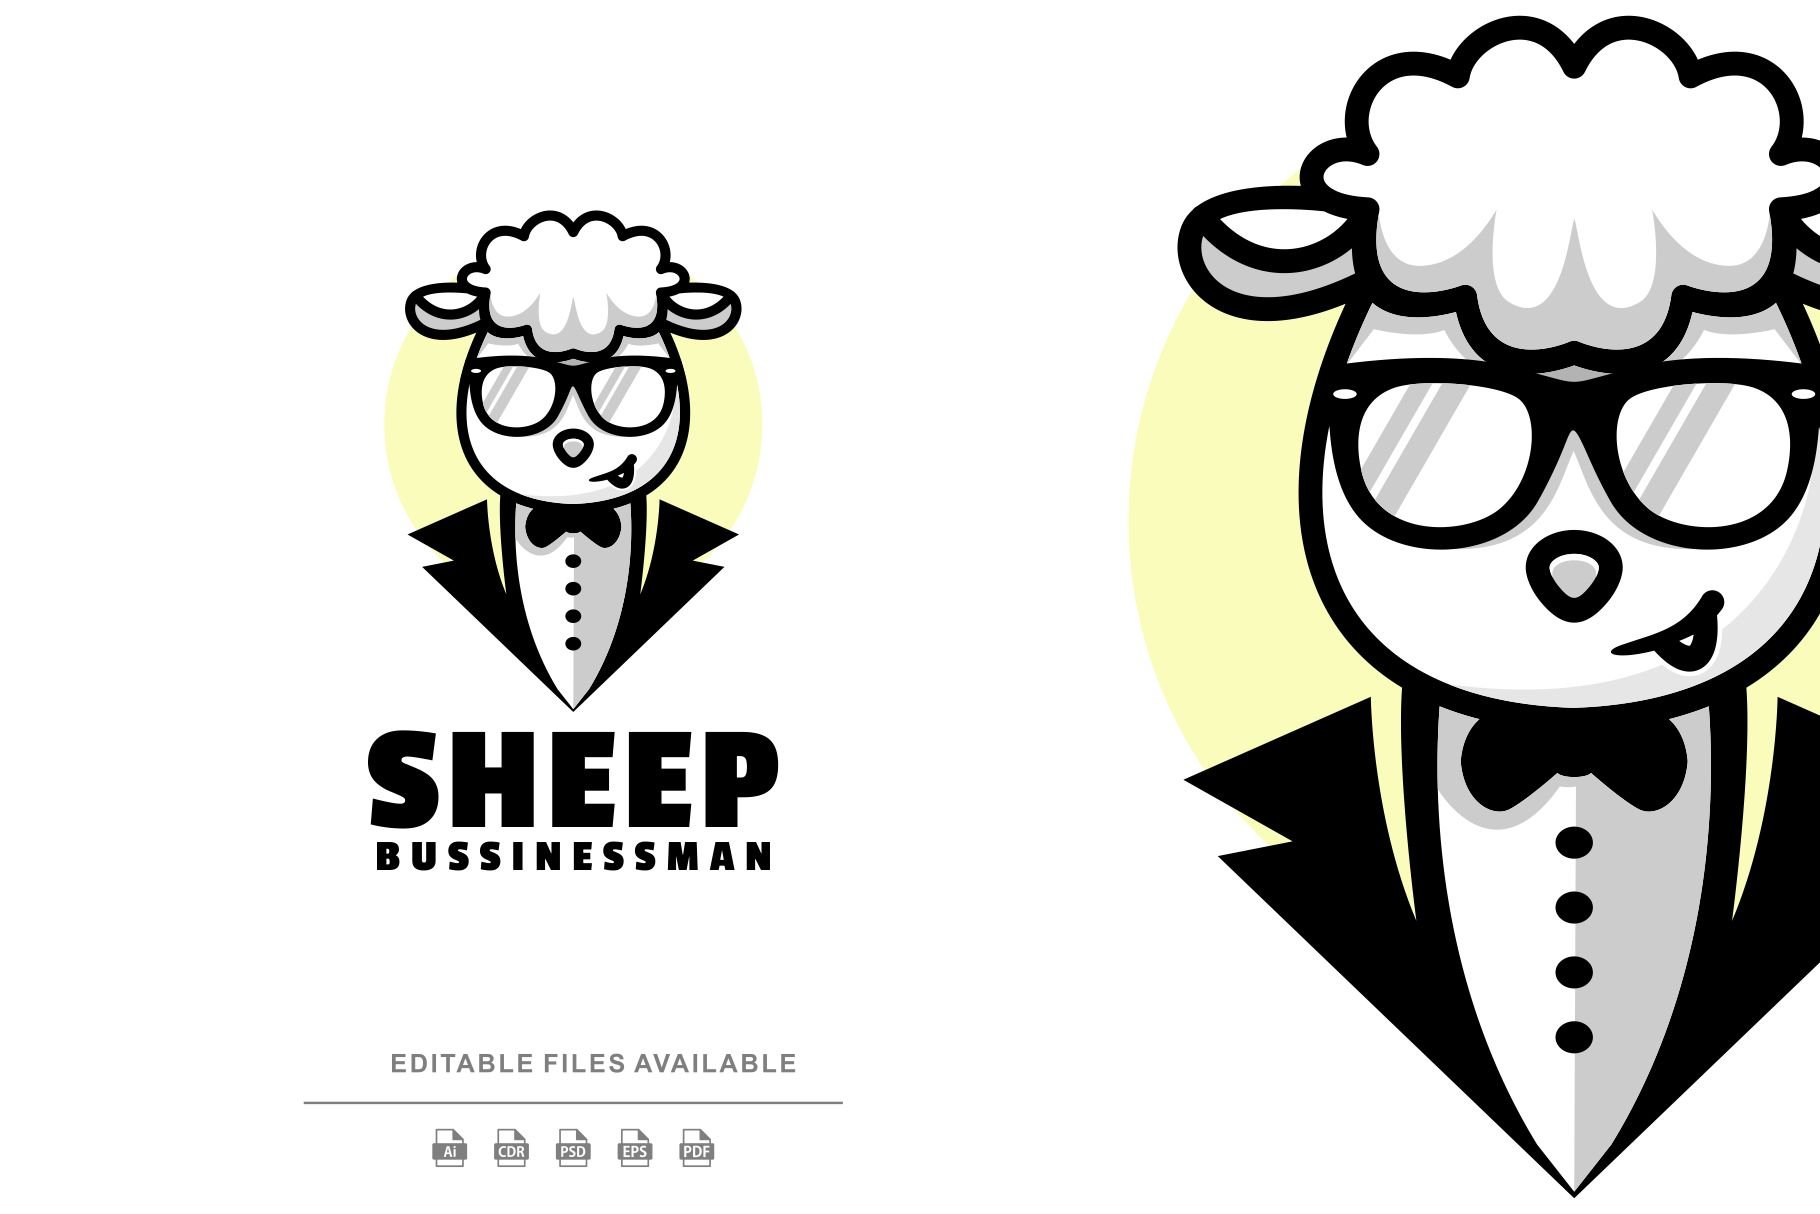 Sheep Cartoon Character Logo cover image.